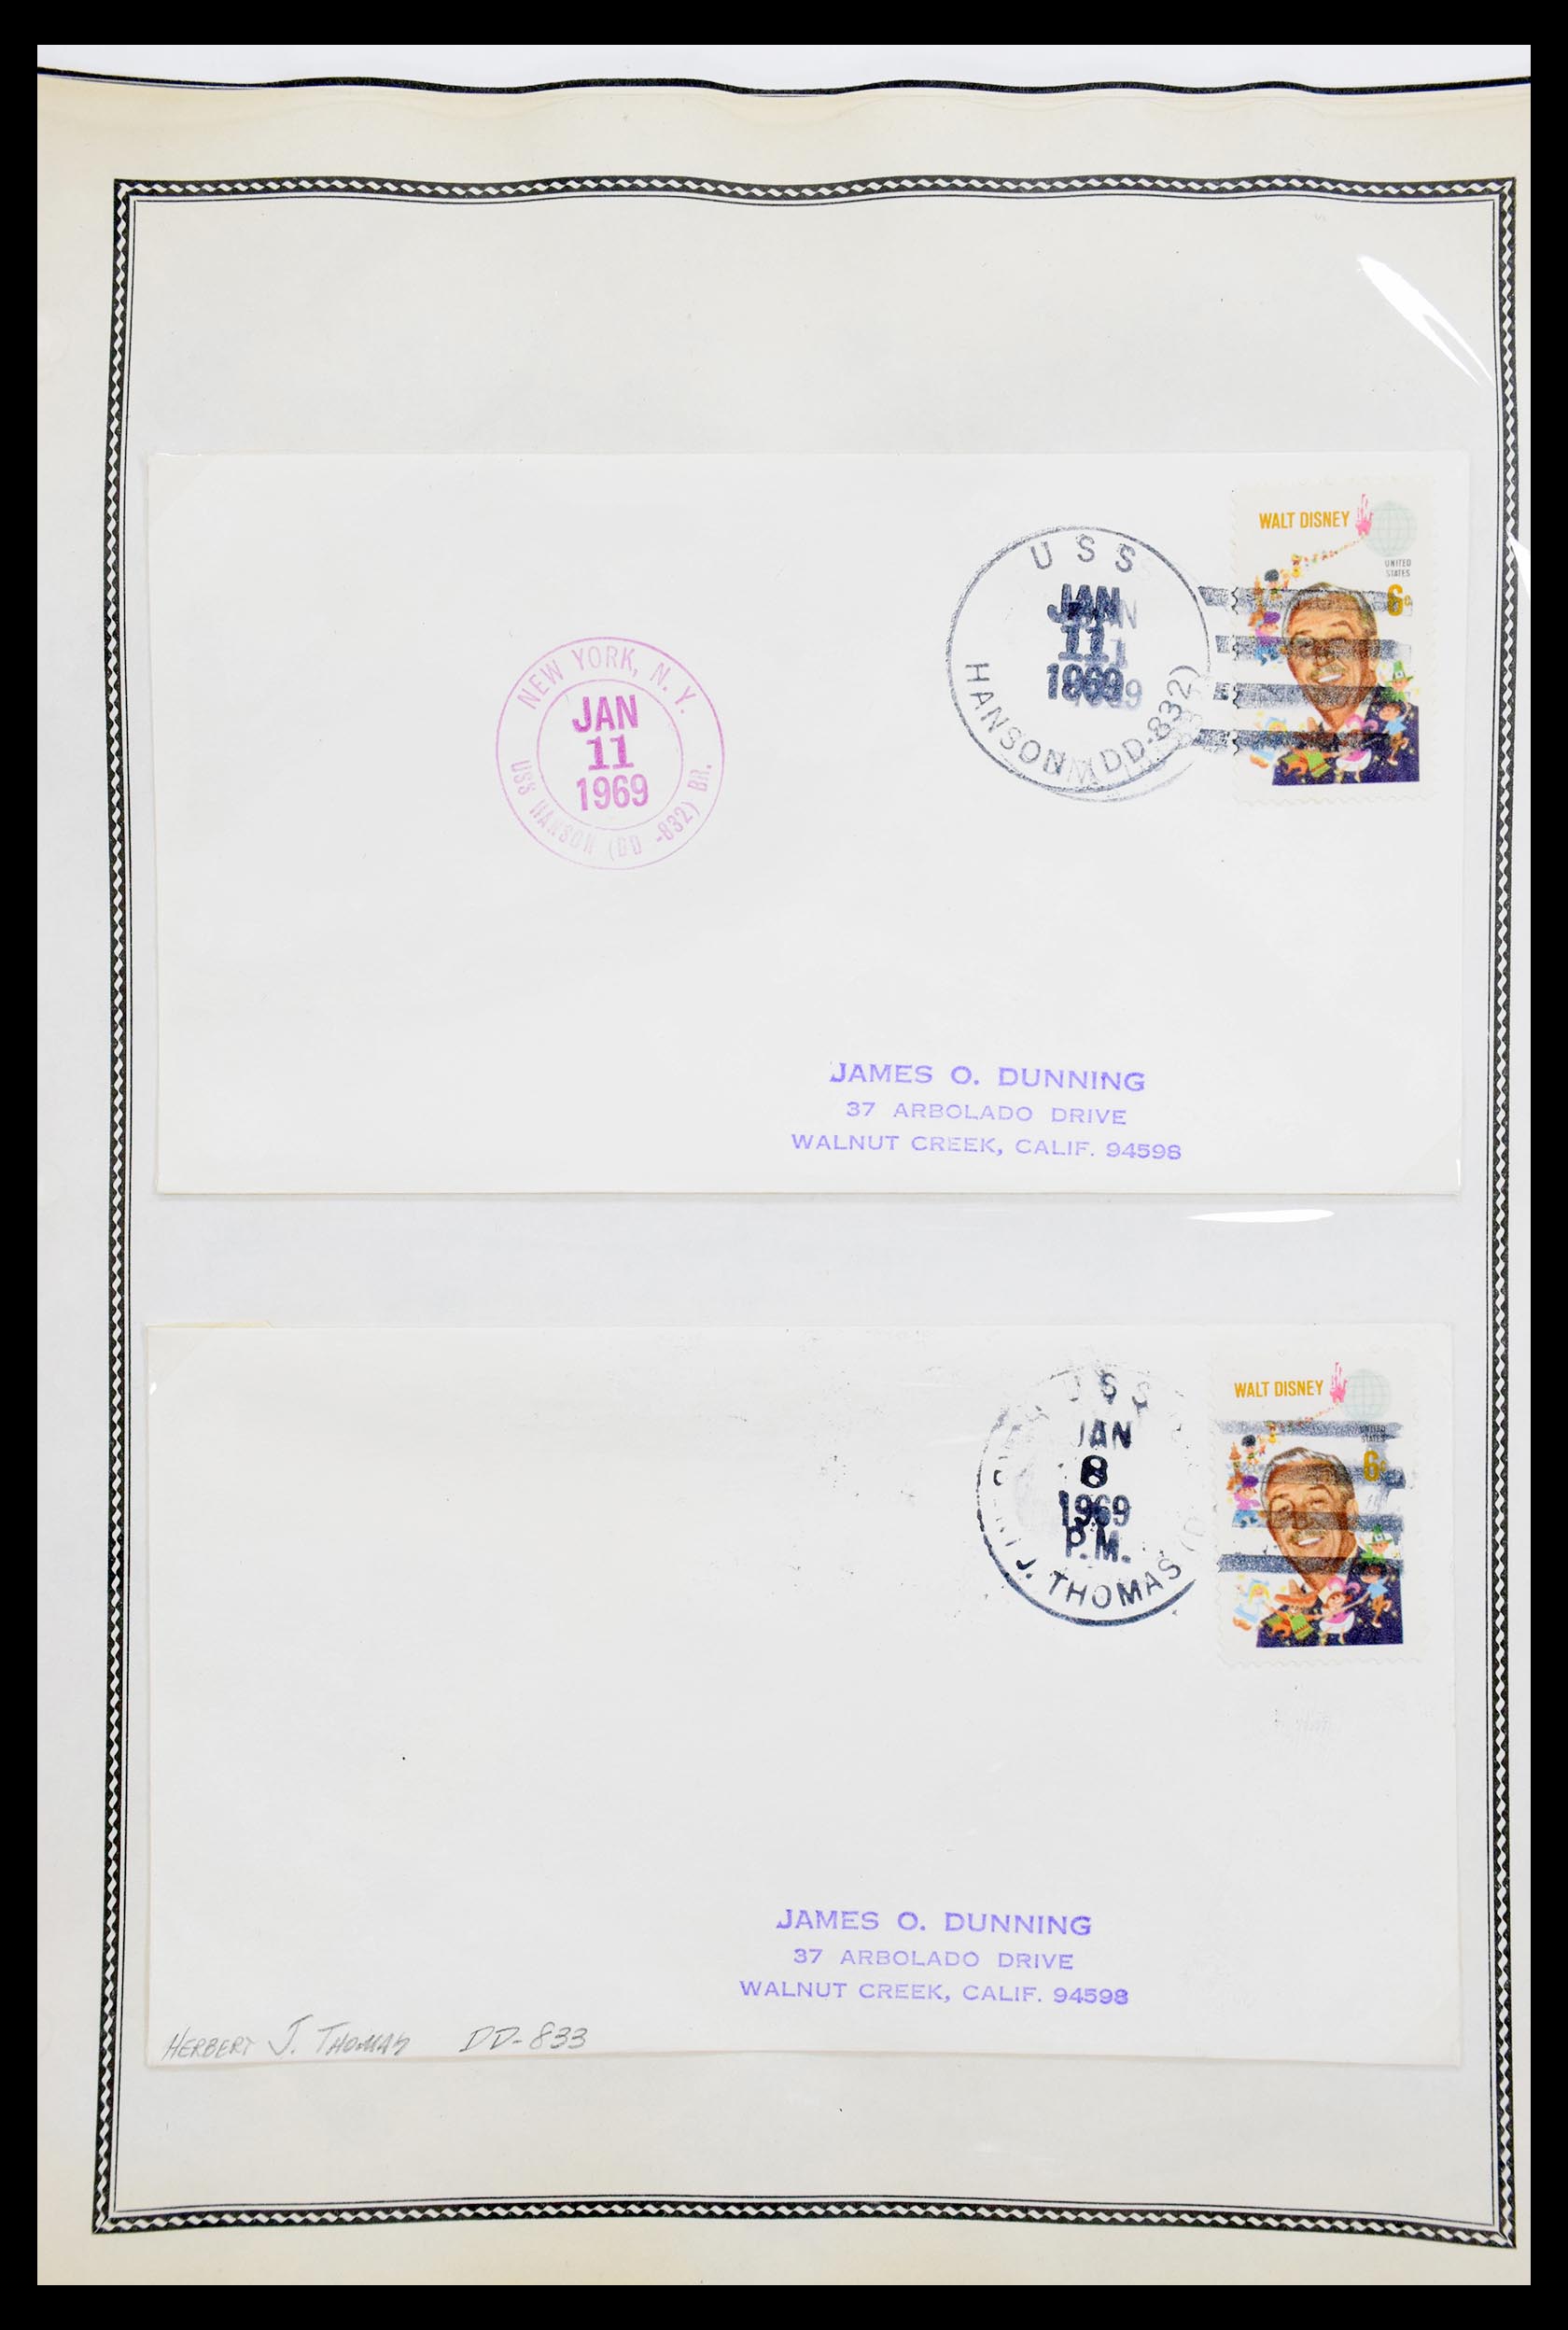 30341 053 - 30341 USA scheepspost brieven 1930-1970.